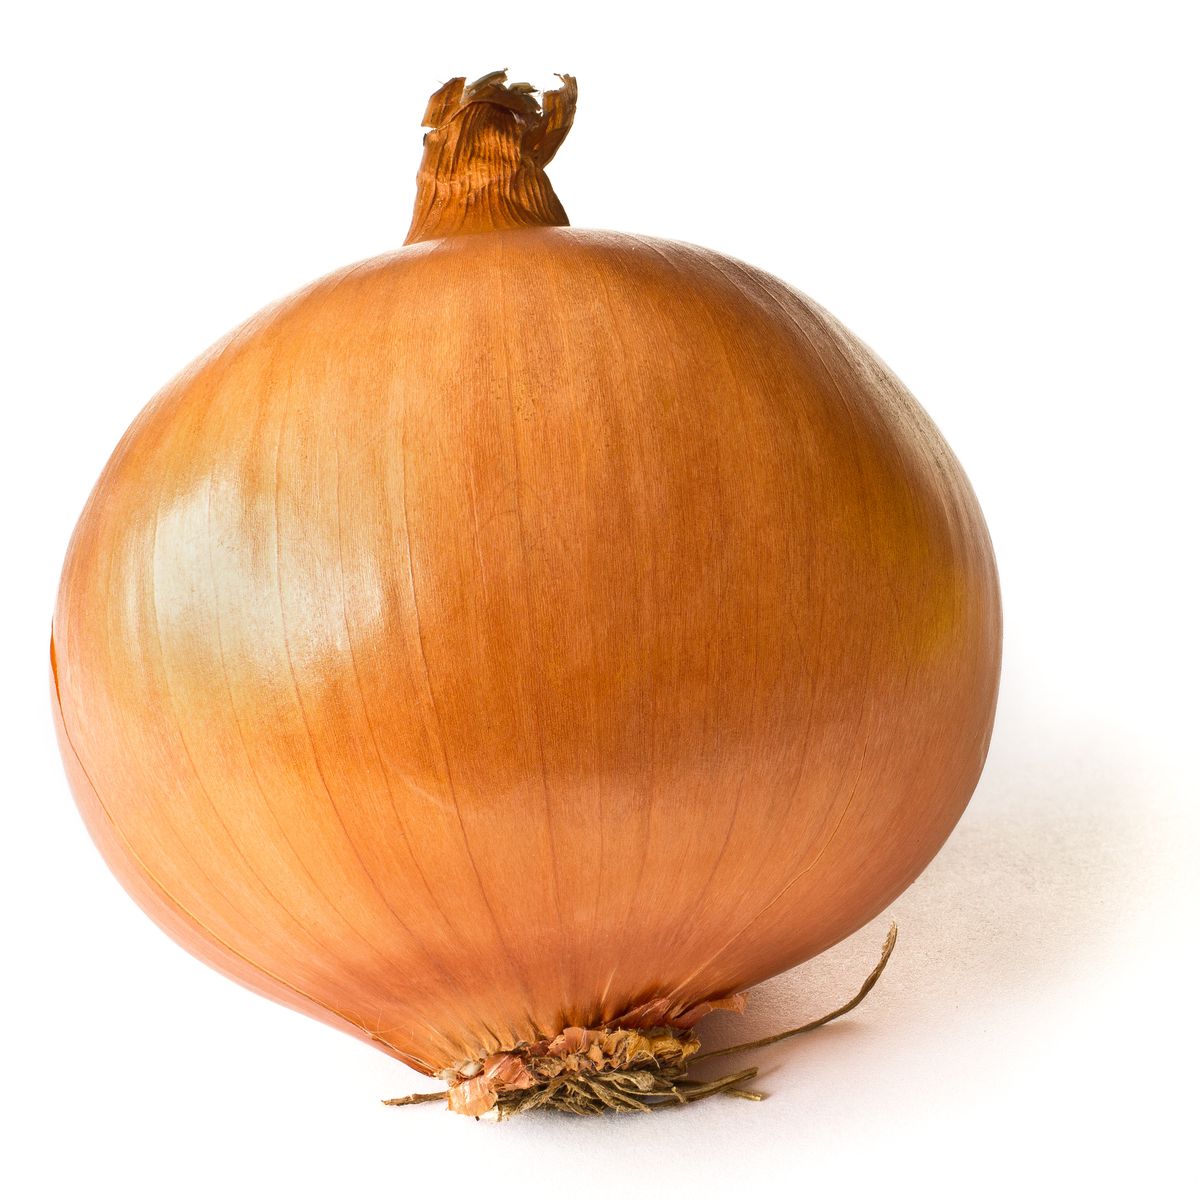 An Onion